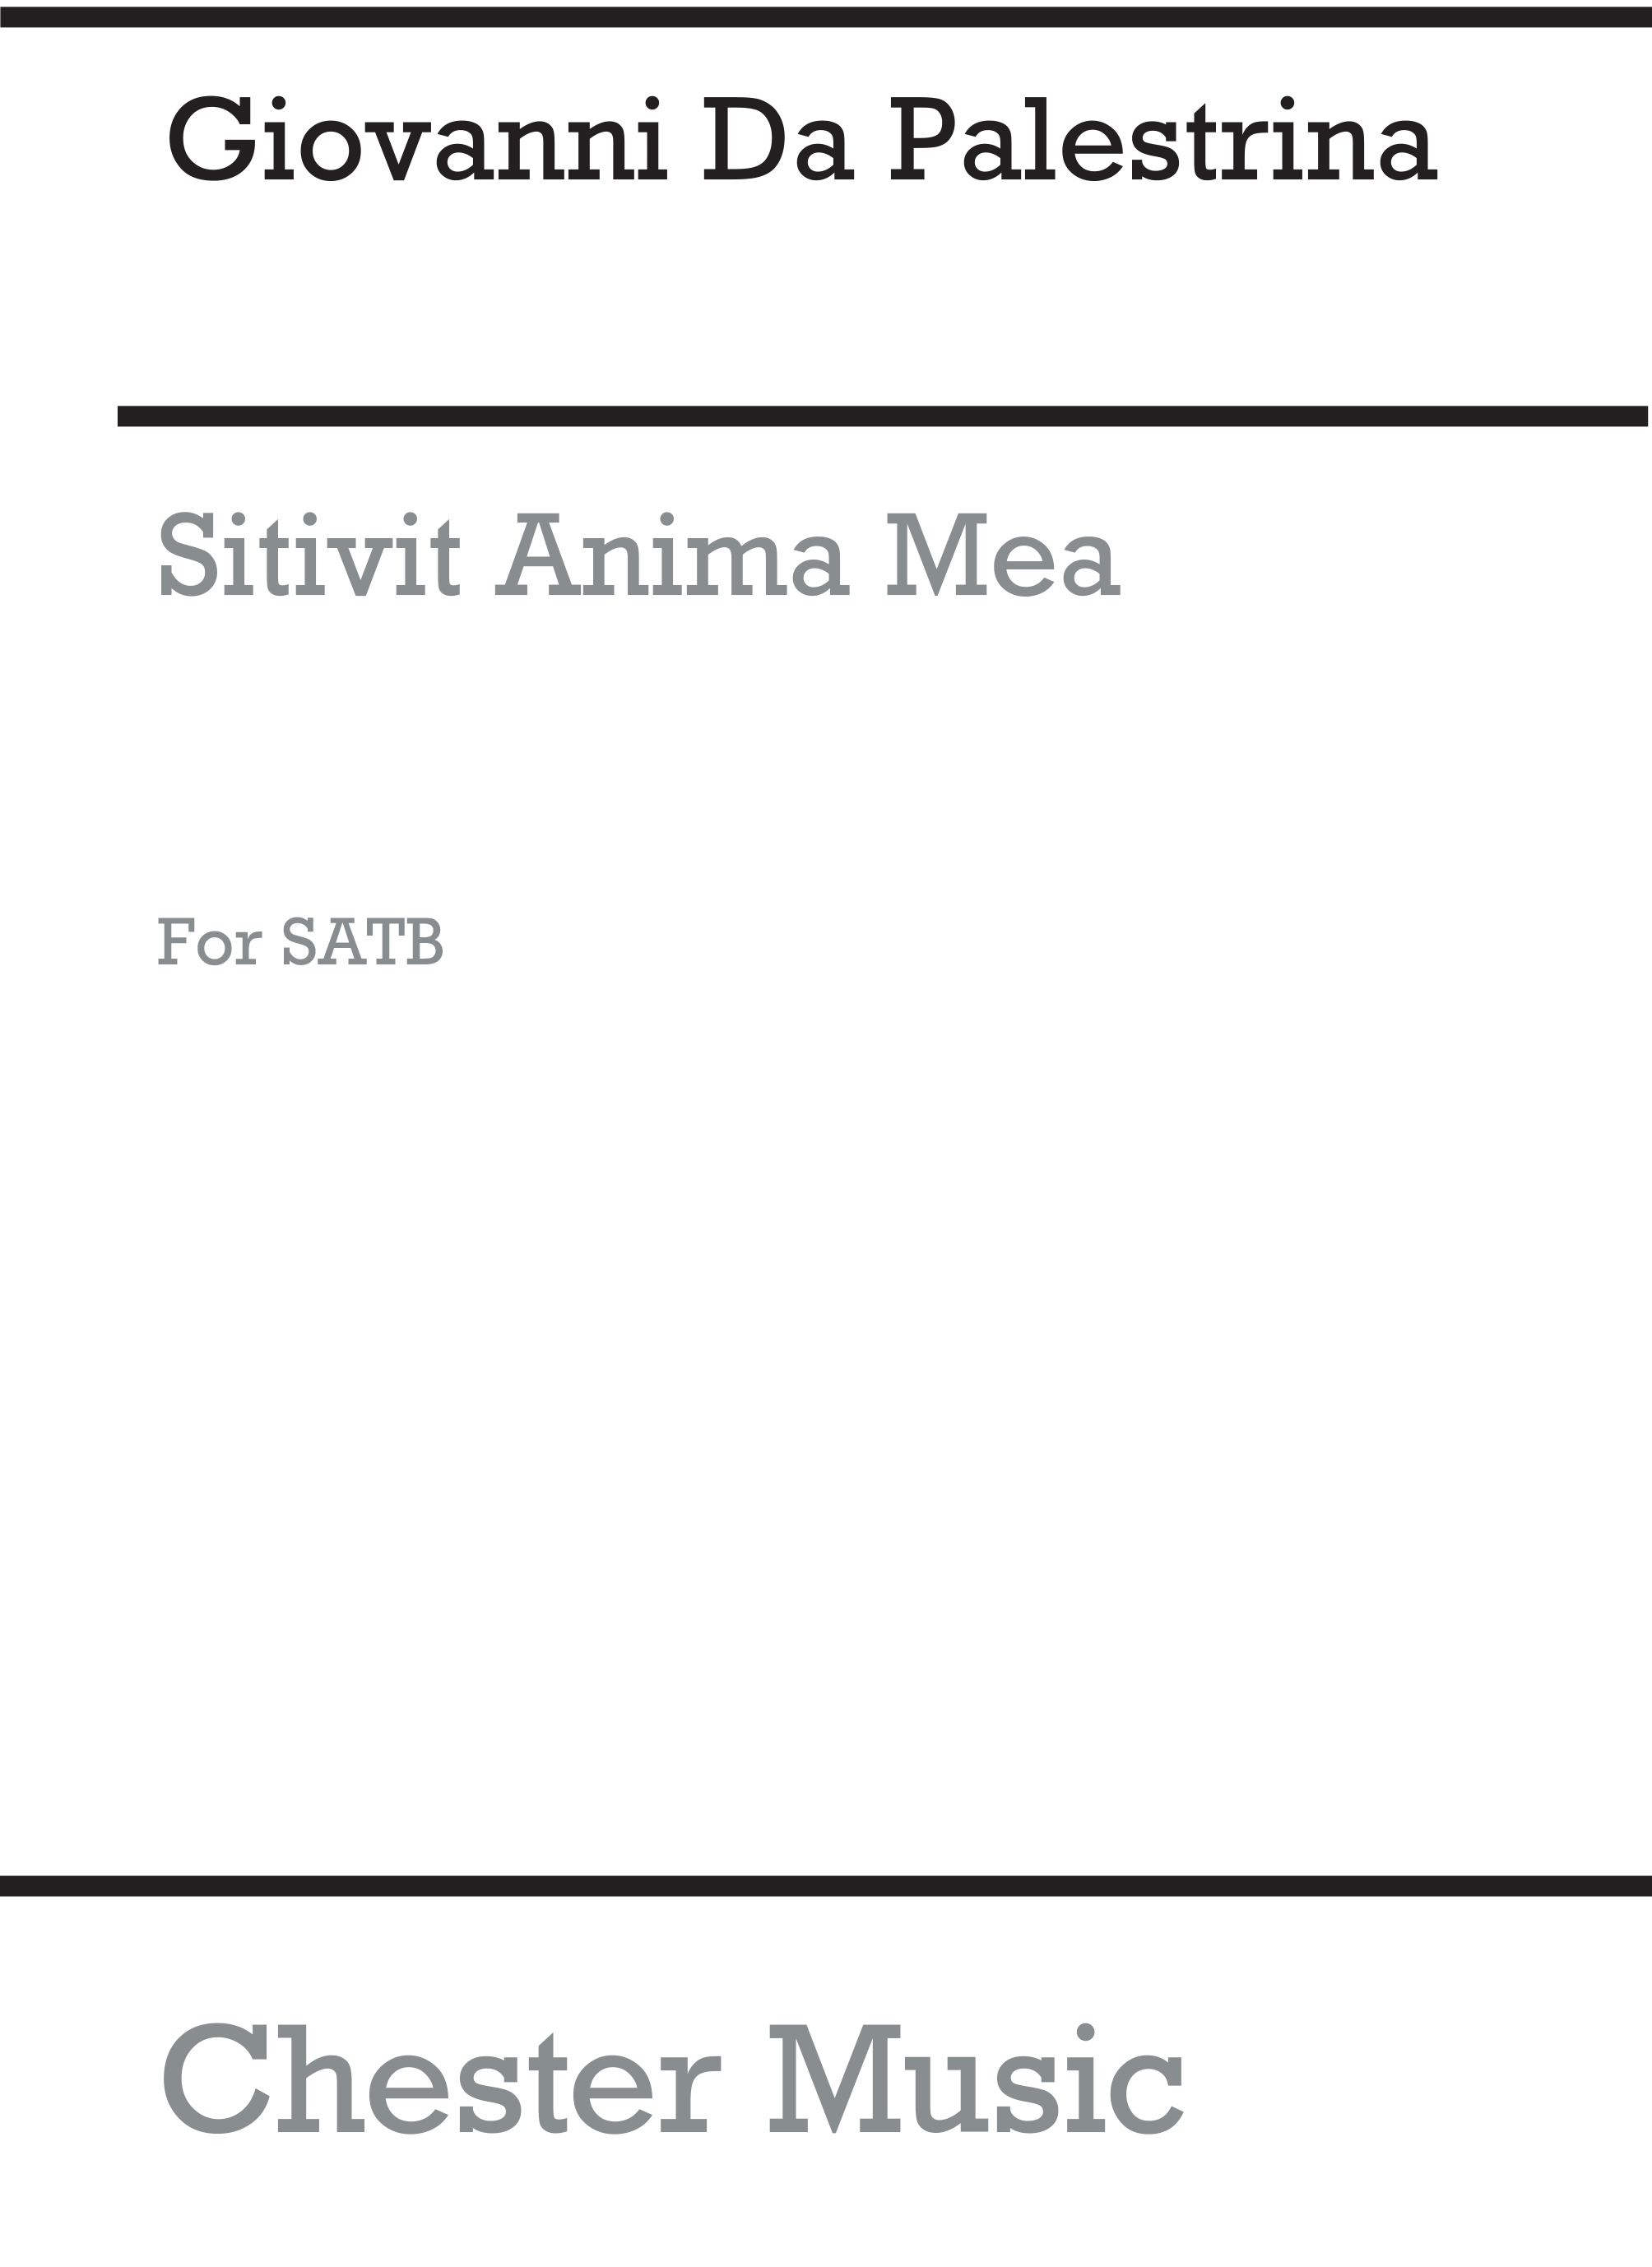 Giovanni Palestrina: Sitivit Anima Mea: SATB: Vocal Score